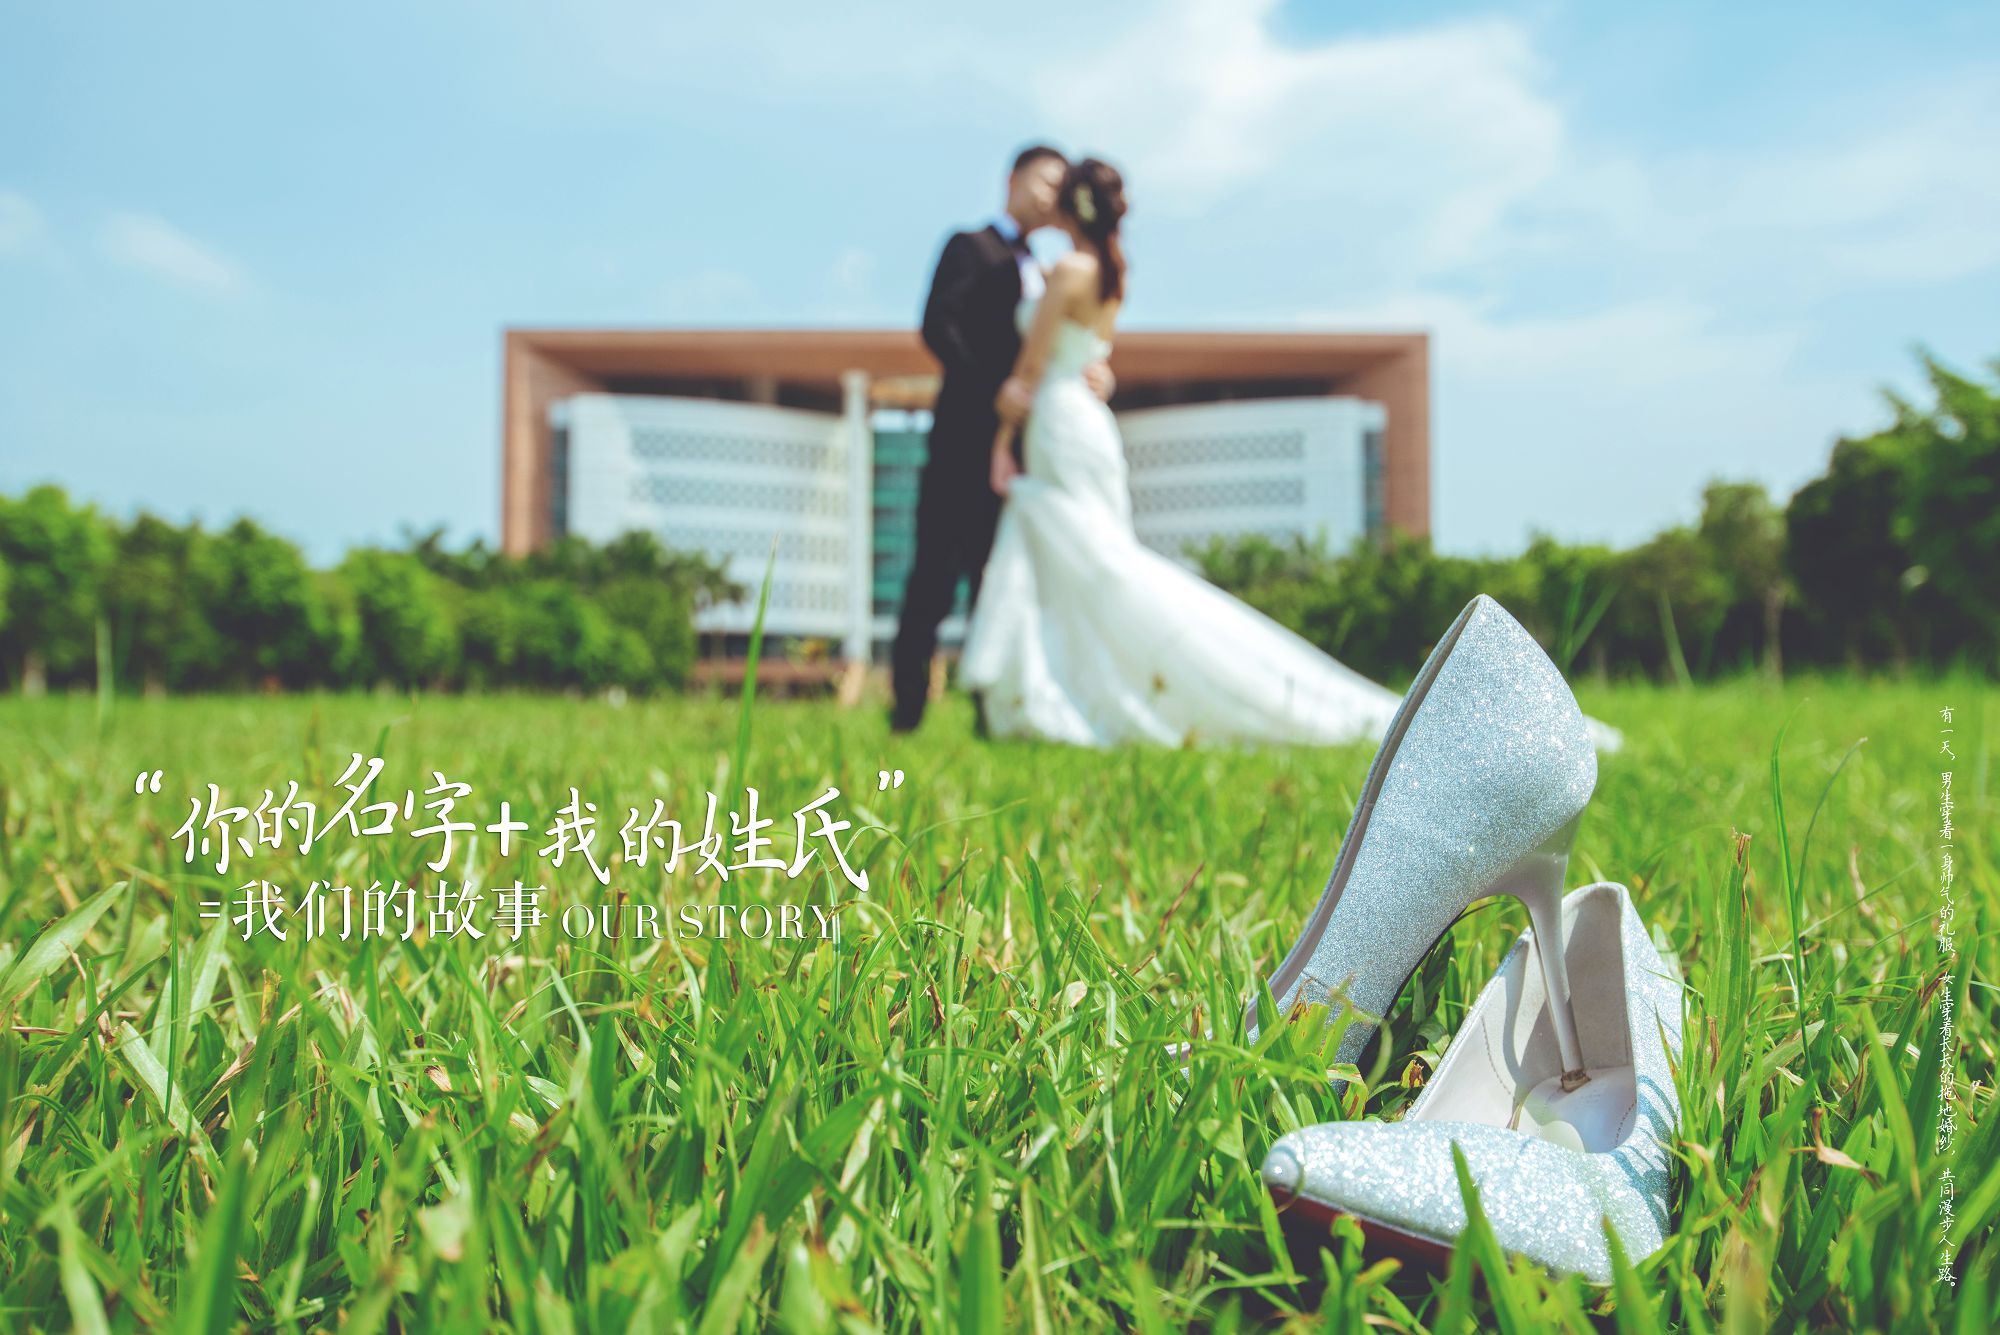 2018年11月广州婚纱照图片,肇庆婚纱照,婚纱照图片